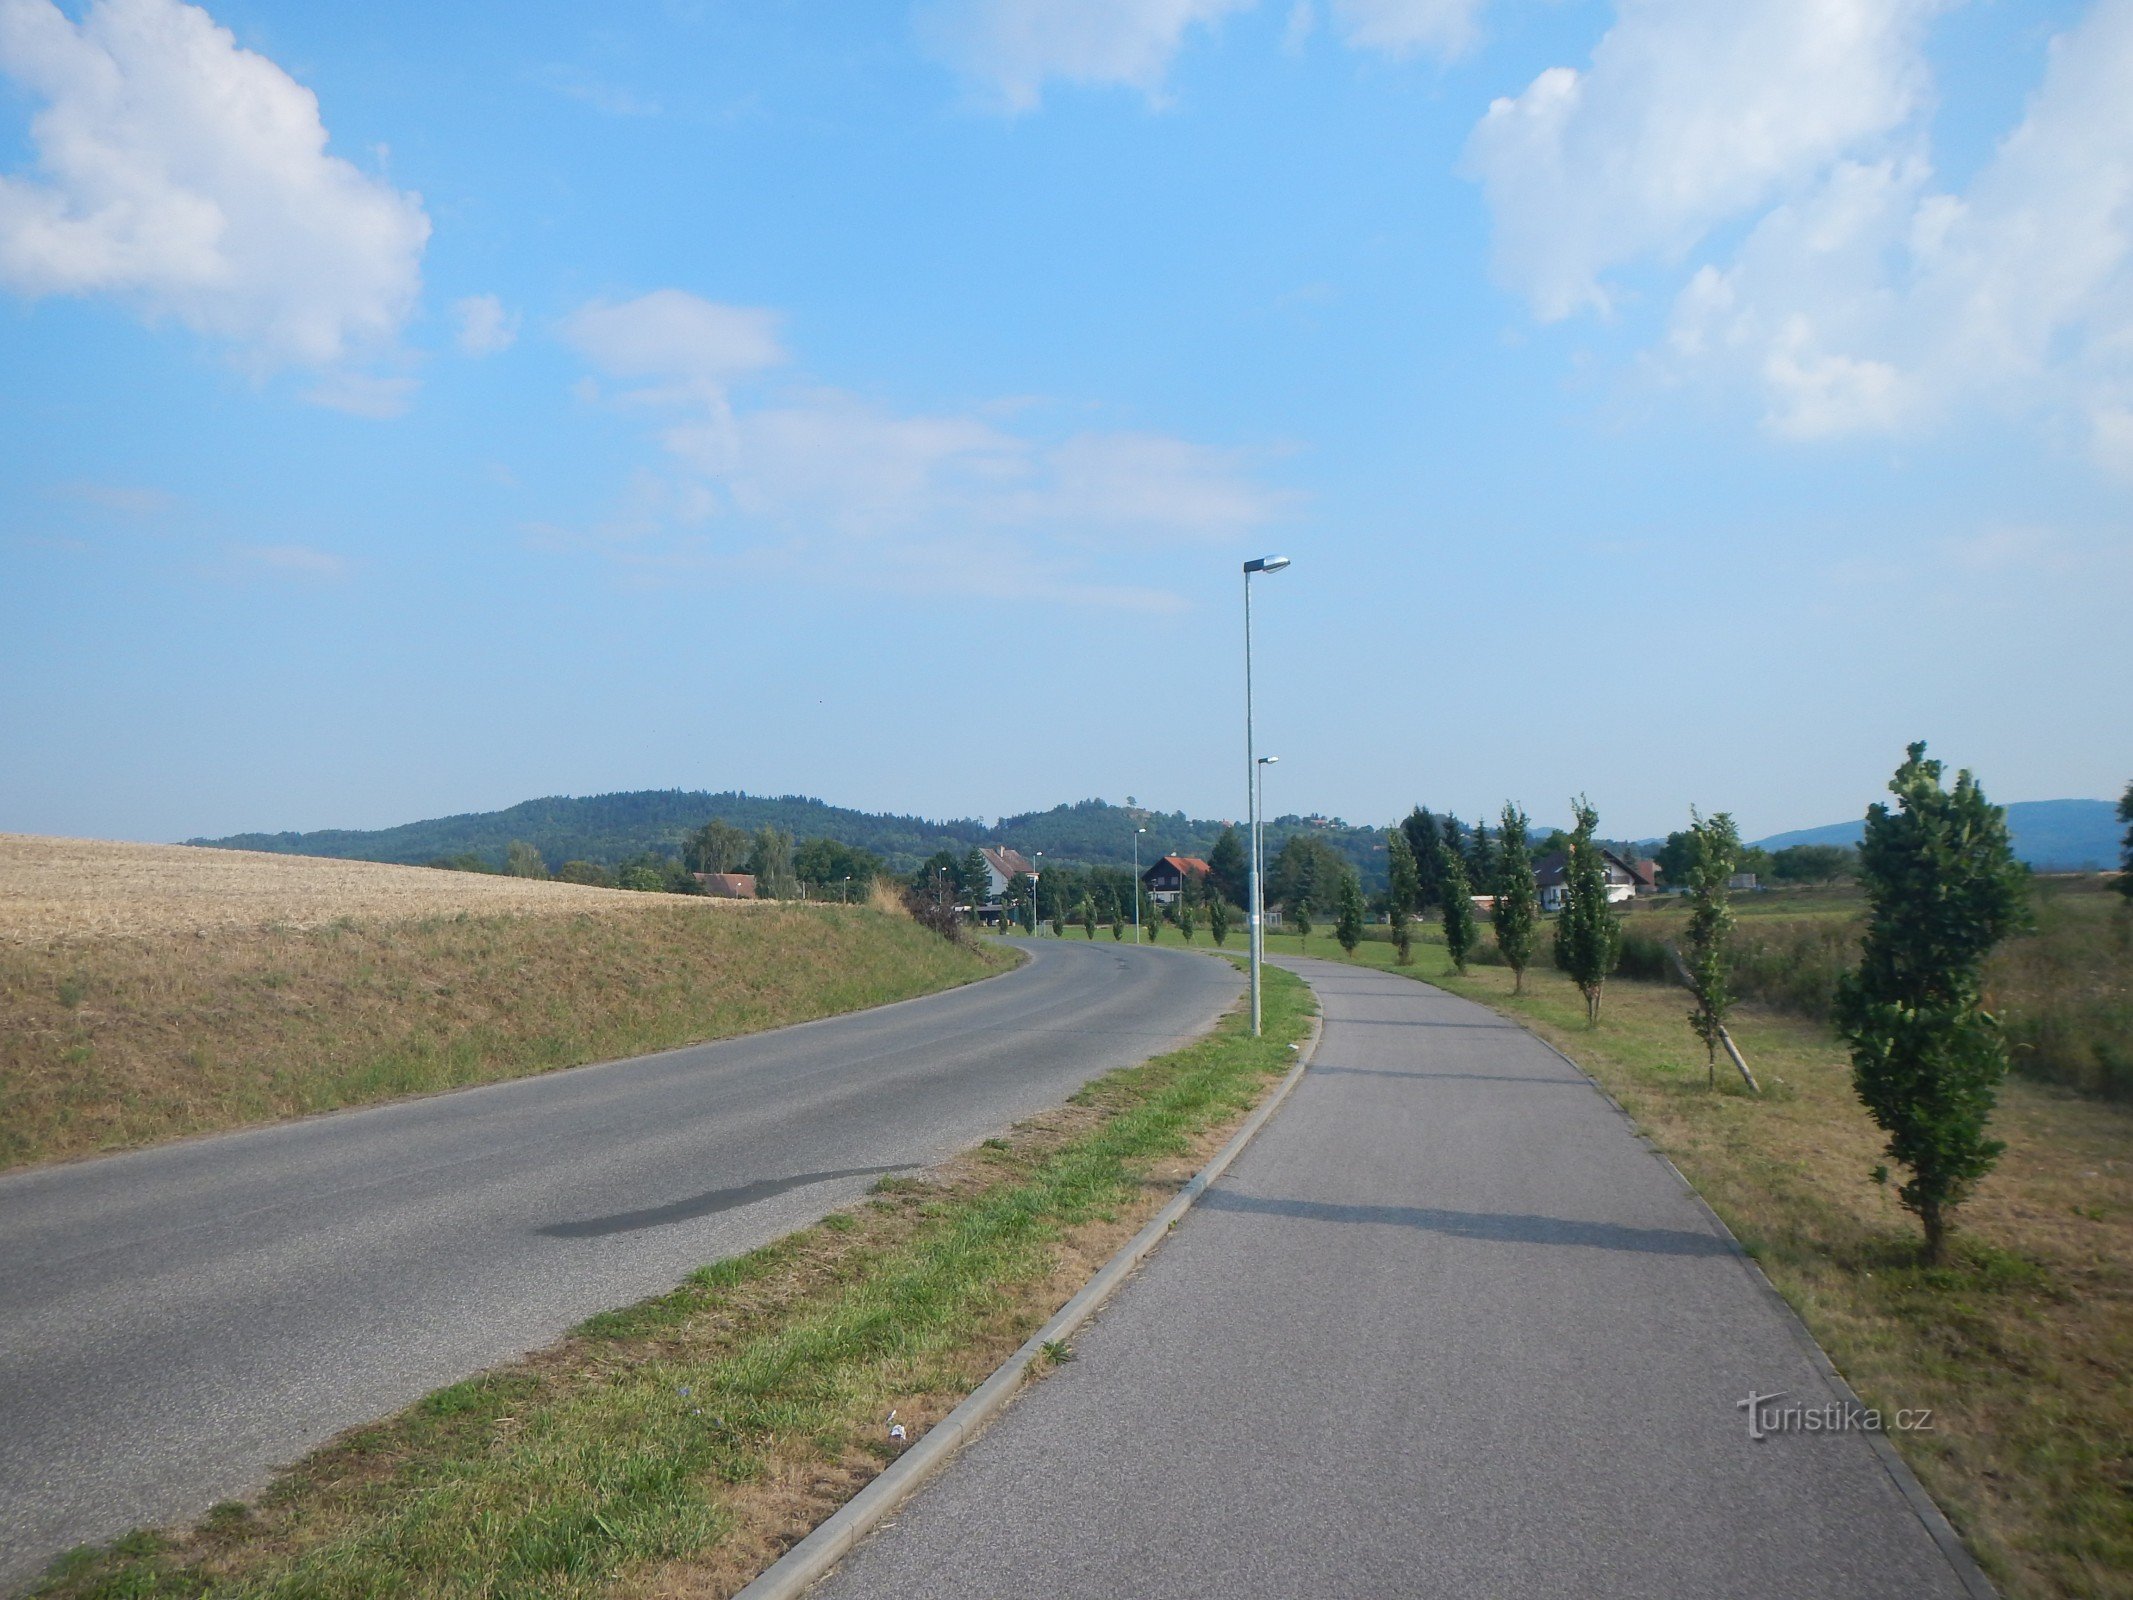 Trasa rowerowa nr 14 z Holína do Prachova. W tle wzgórza Přivýšina i Brada.